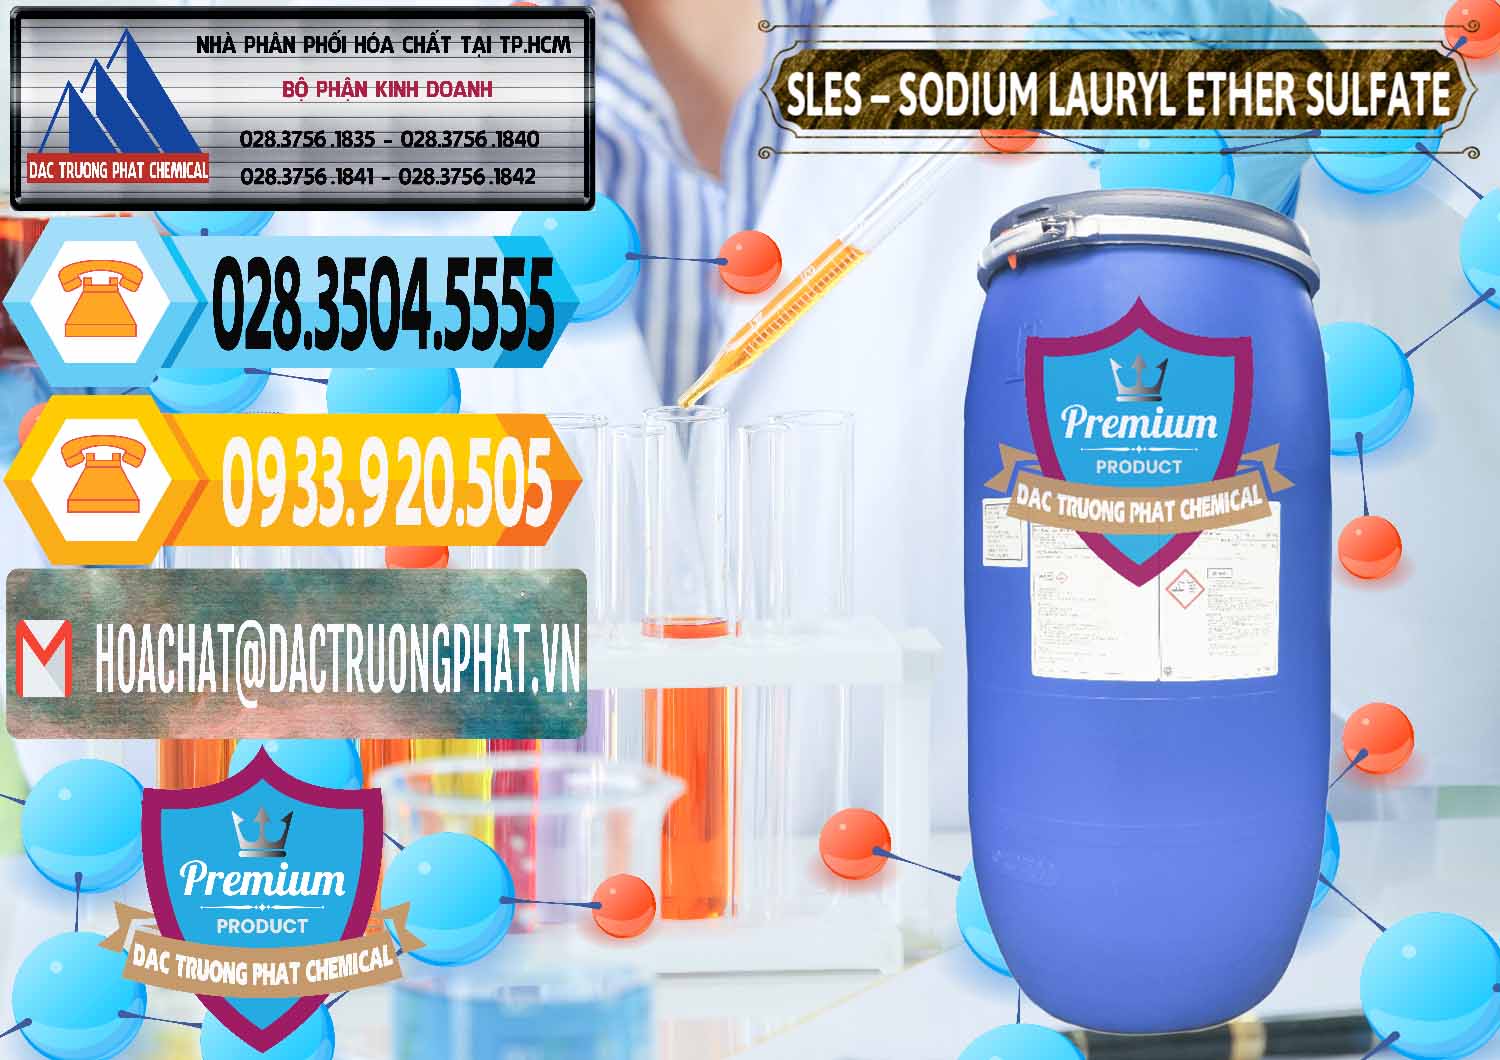 Cty bán _ phân phối Chất Tạo Bọt Sles - Sodium Lauryl Ether Sulphate Kao Indonesia - 0046 - Cty phân phối và bán hóa chất tại TP.HCM - hoachattayrua.net